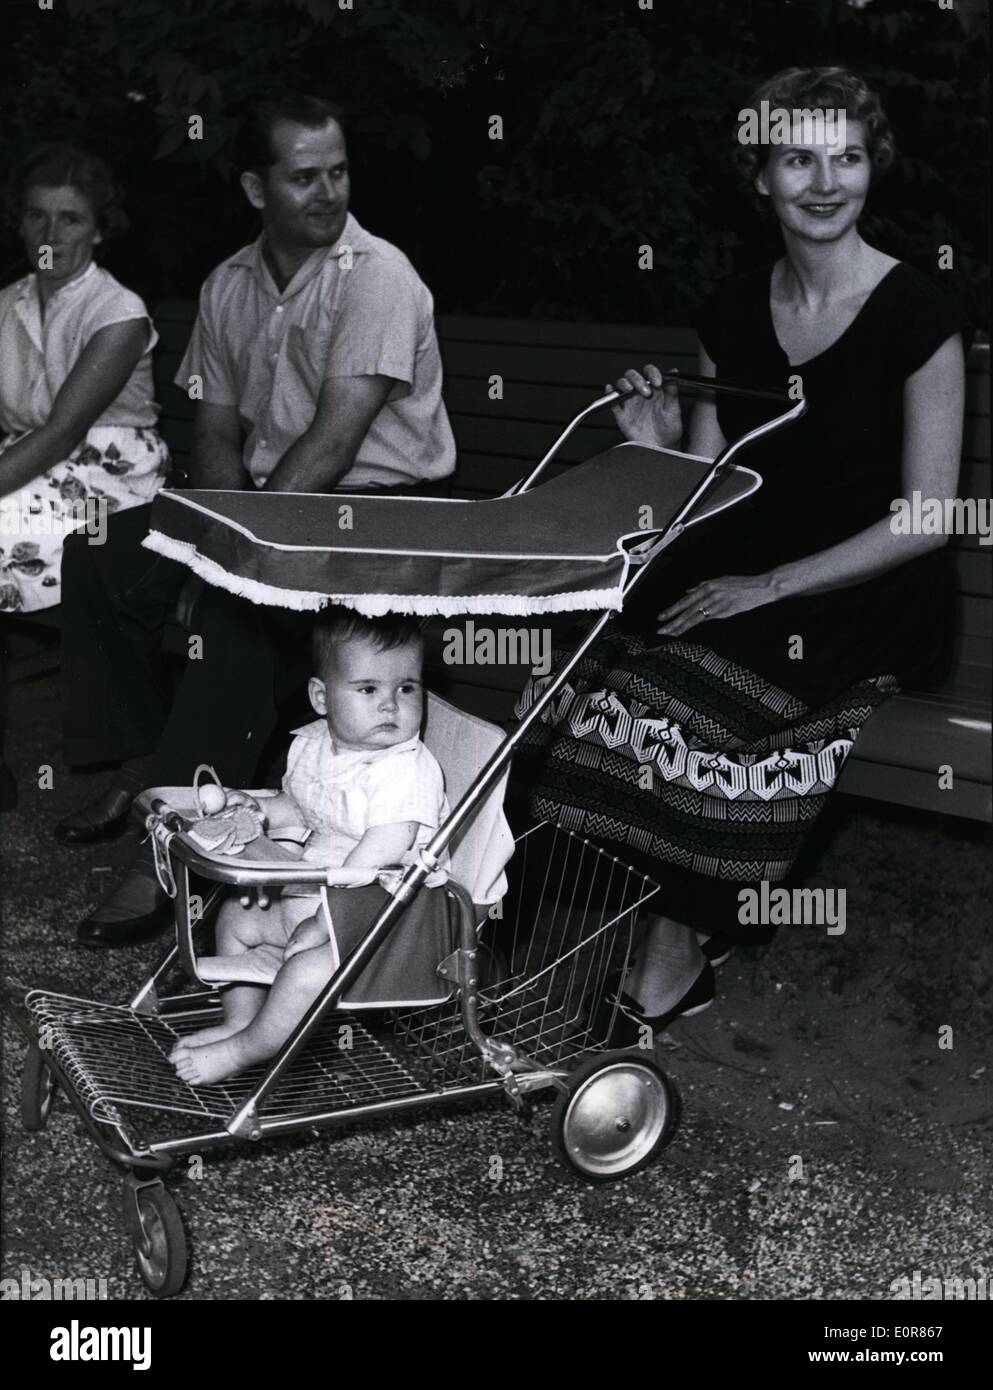 Lug. 07, 1958 - come il poco praticabile paniere di un self-serve shop.........American carrozzina, modello 1958 è alla ricerca. Foto Stock